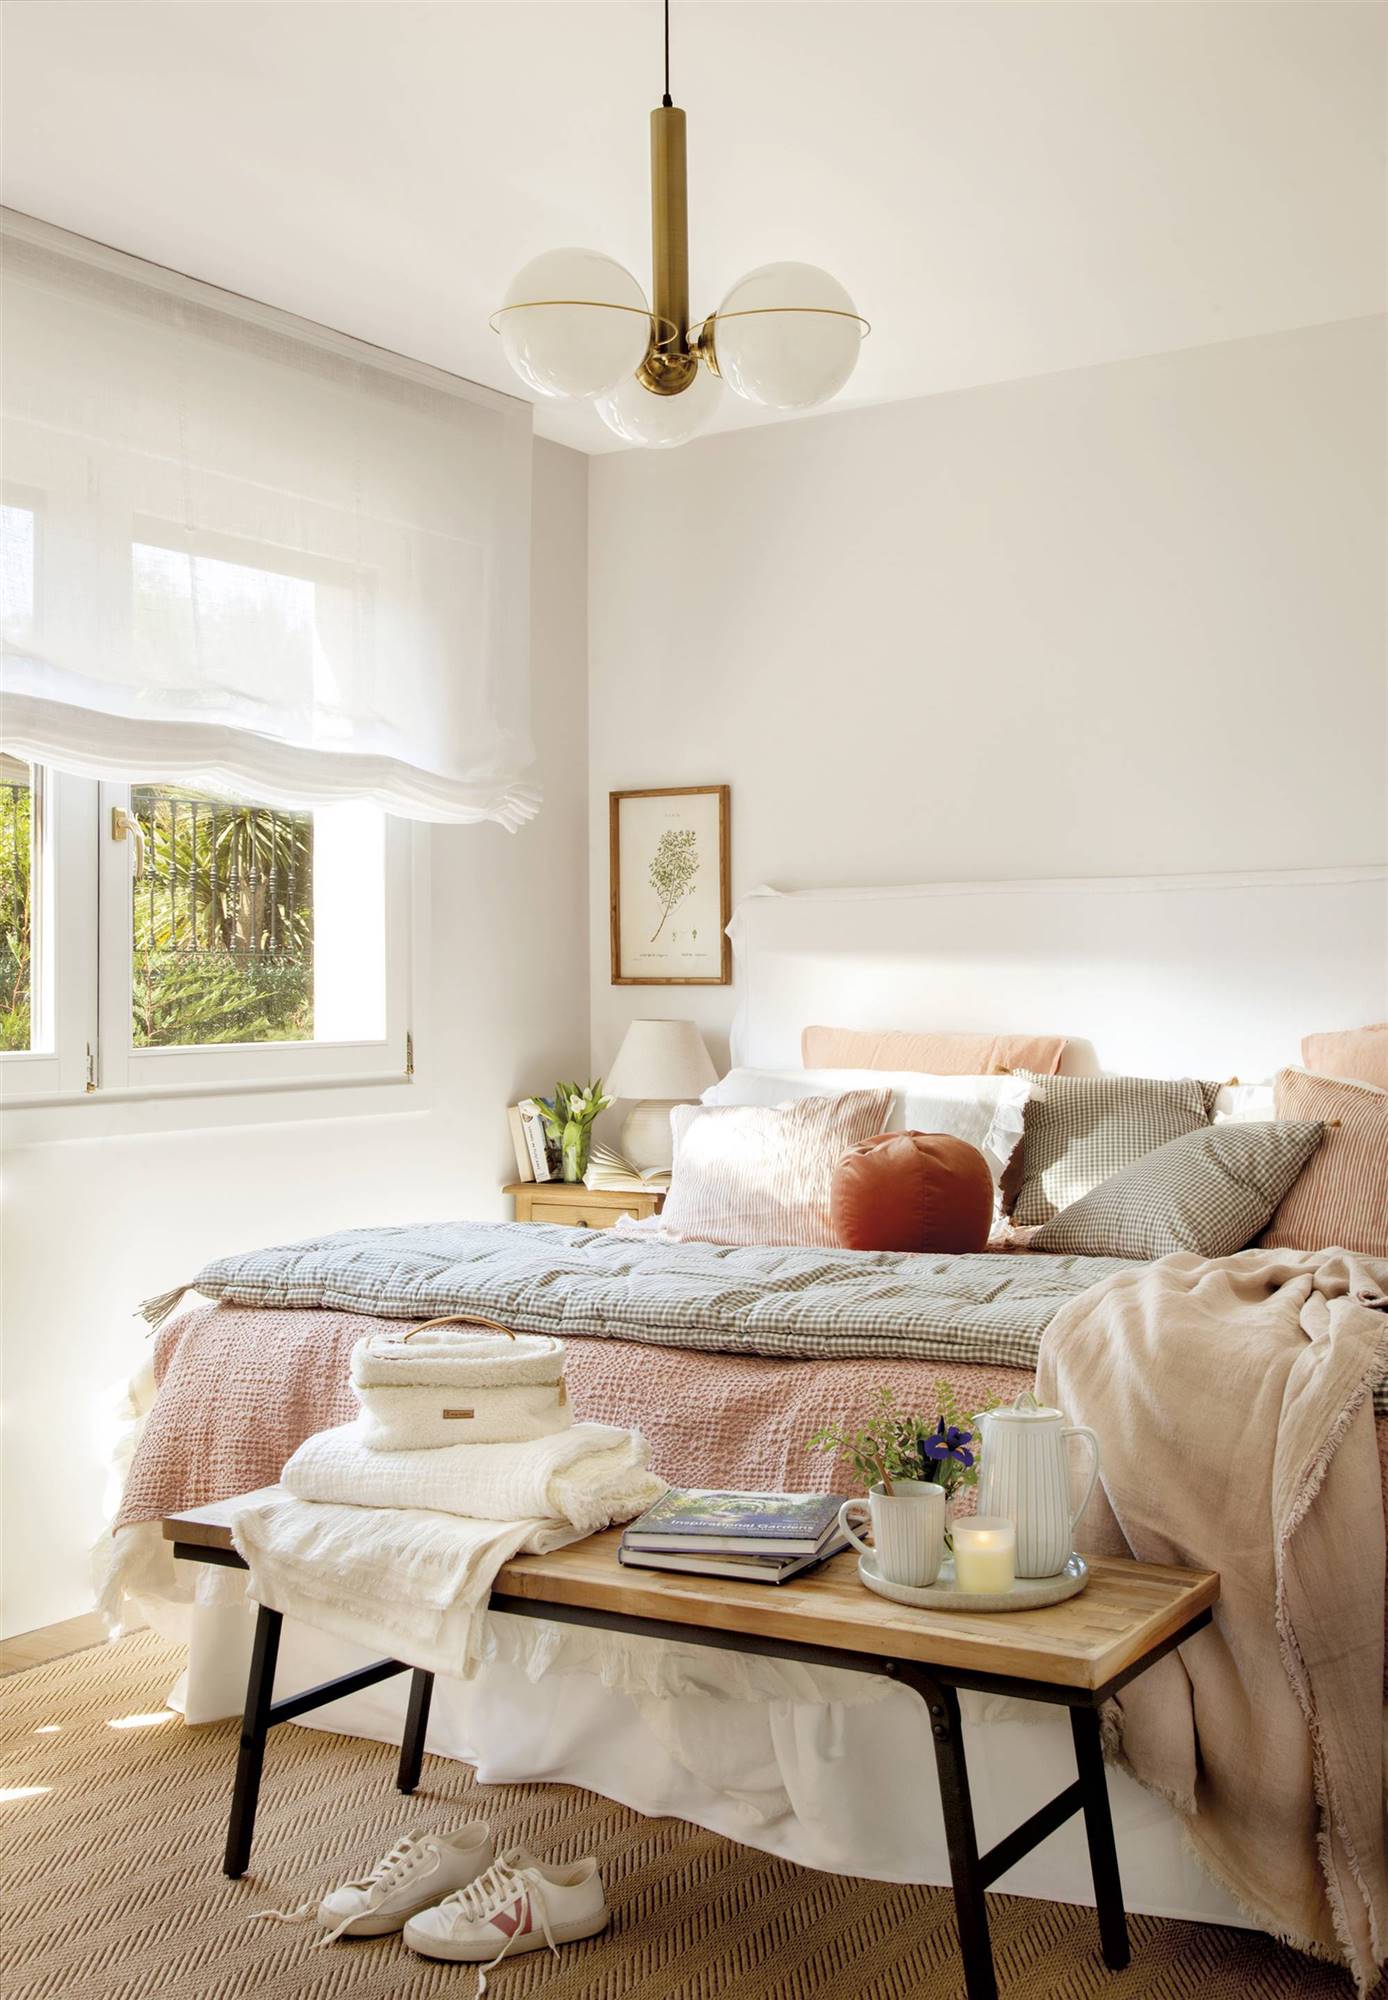 Dormitorio de color blanco, con cabecero y estores blancos, lámpara de techo con bolas, ropa de cama en tonos rosados y banco a los pies. 